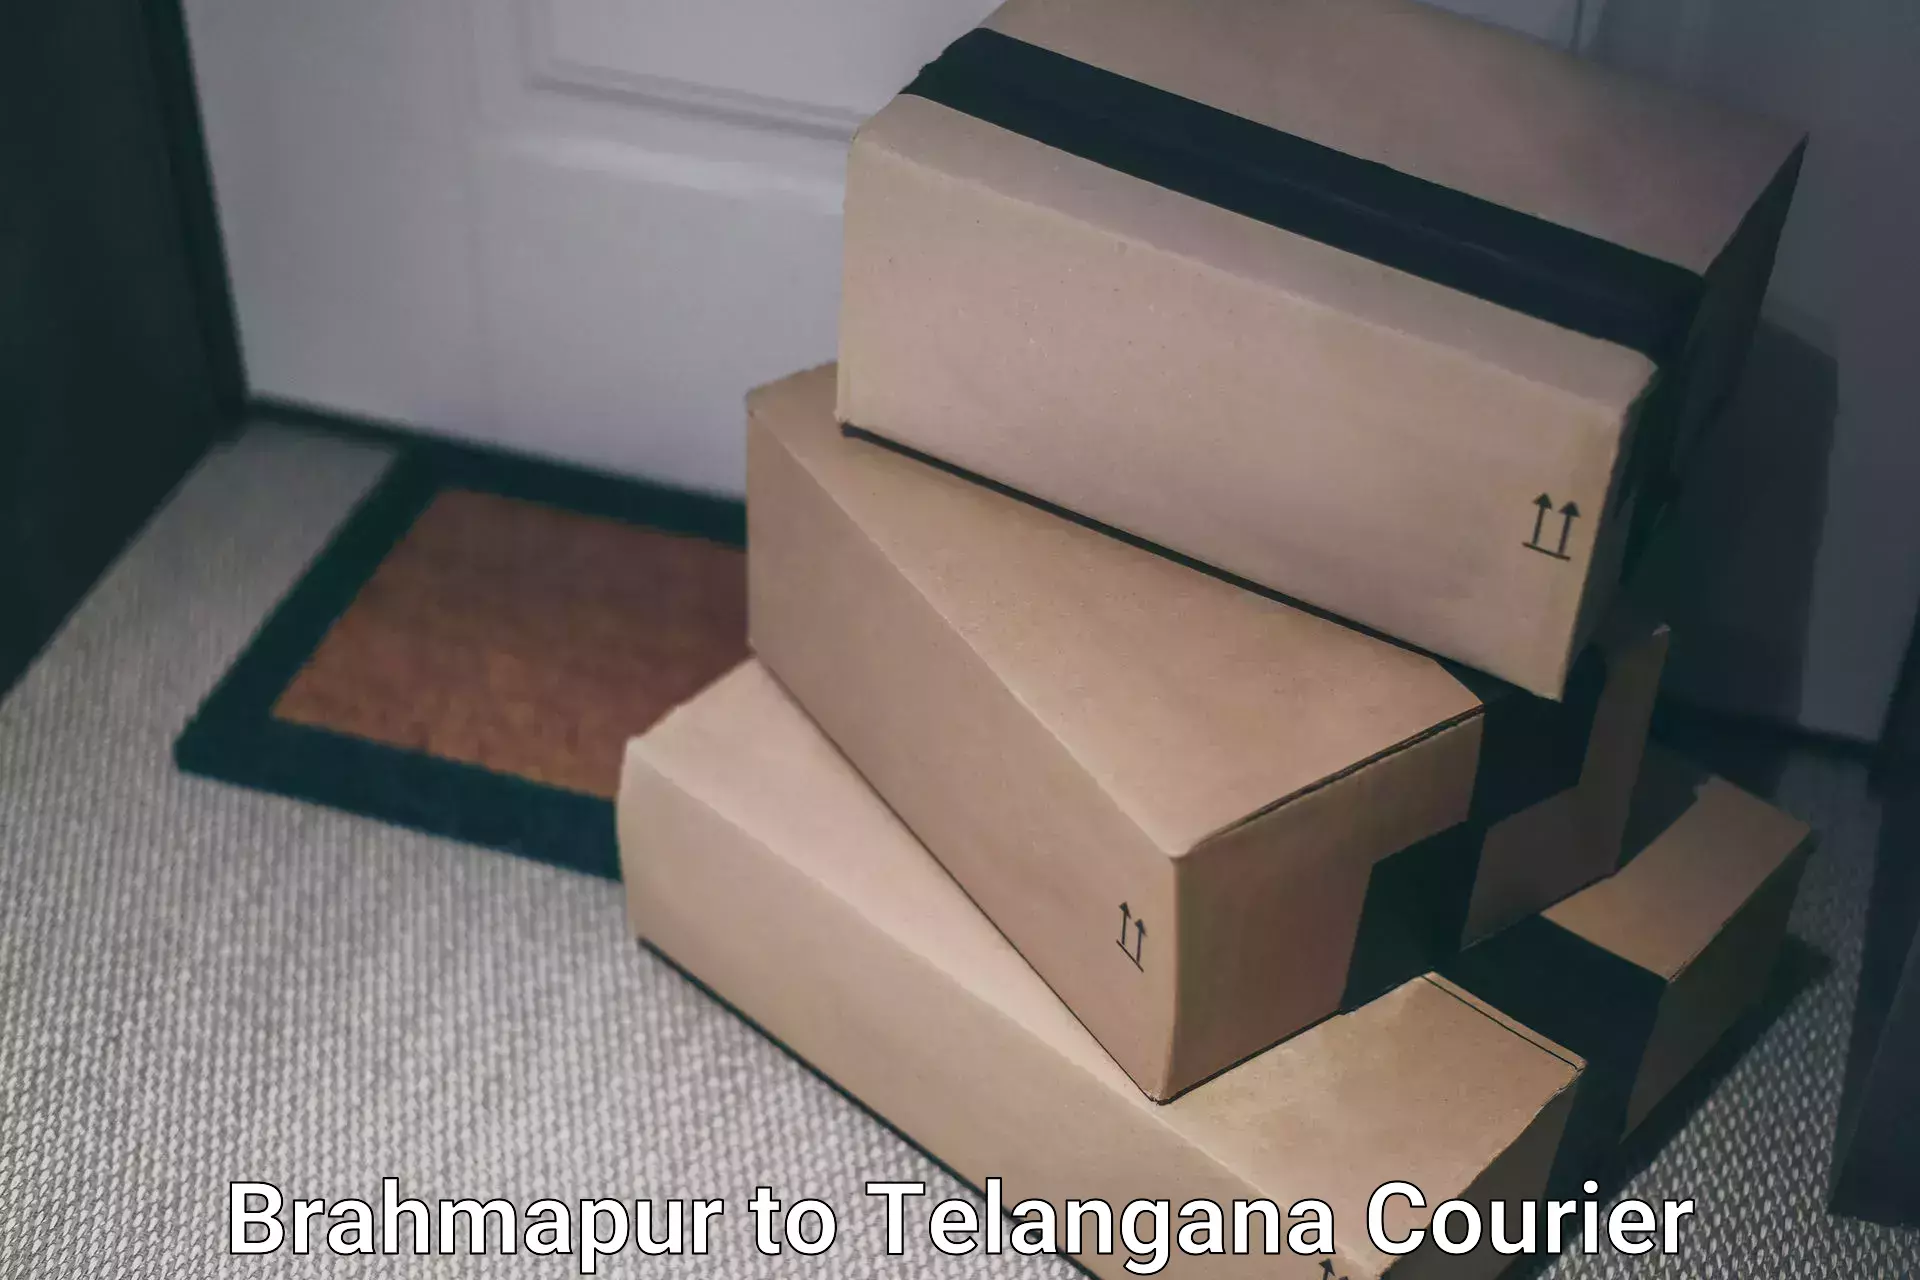 Express package transport Brahmapur to Telangana